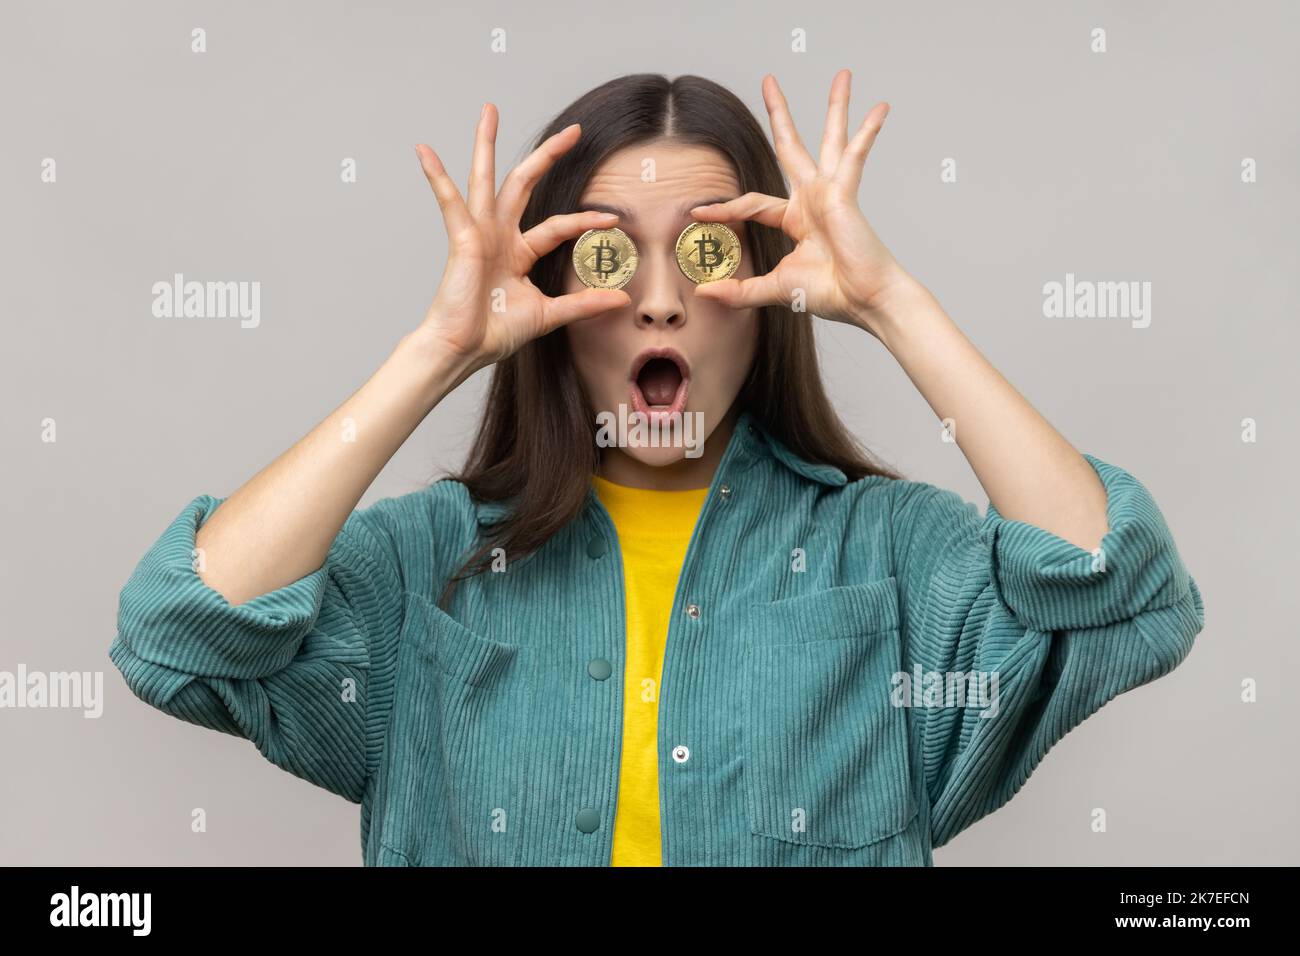 Porträt einer verblüfften, überraschten Frau, die die Augen mit goldenem Bitcoin bedeckt, die Kamera durch die BTC-Münze schaut, den Mund offen hält und eine Jacke im lässigen Stil trägt. Innenaufnahme des Studios isoliert auf grauem Hintergrund. Stockfoto